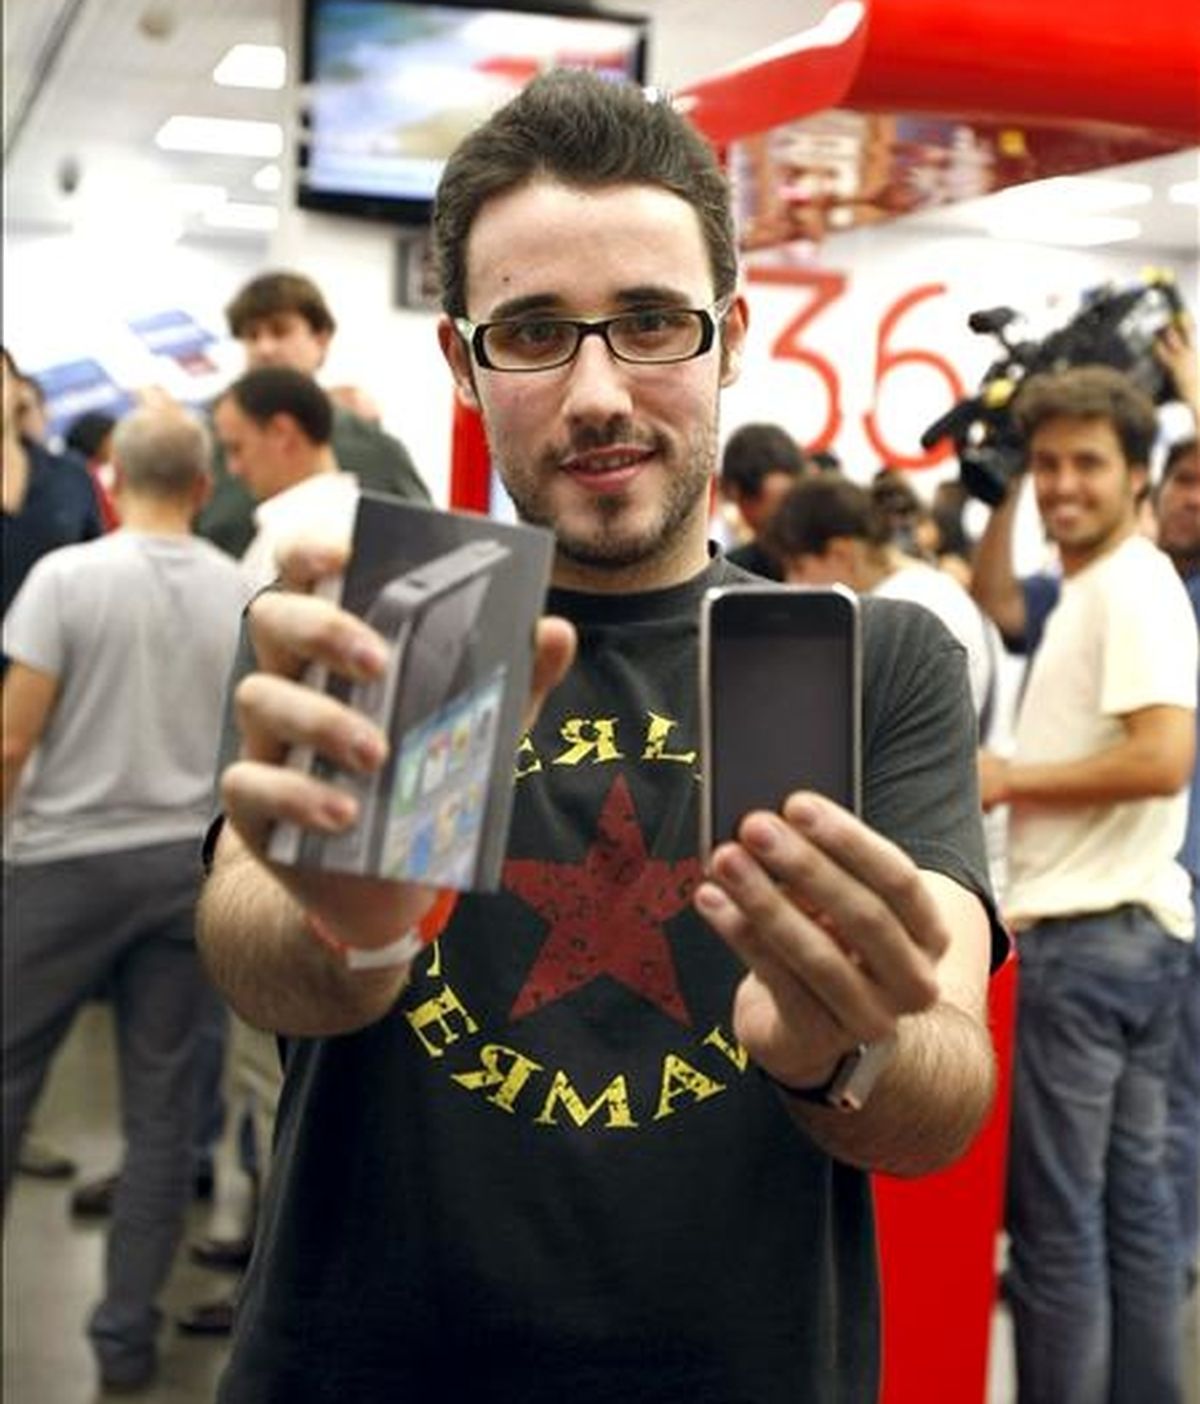 Uno de los primeros compradores del último móvil inteligente de Apple, el iPhone 4, posa con él tras conseguirlo en una de las tiendas que han abierto esta medianoche en Madrid para vender las primeras unidades del nuevo dispositivo. EFE